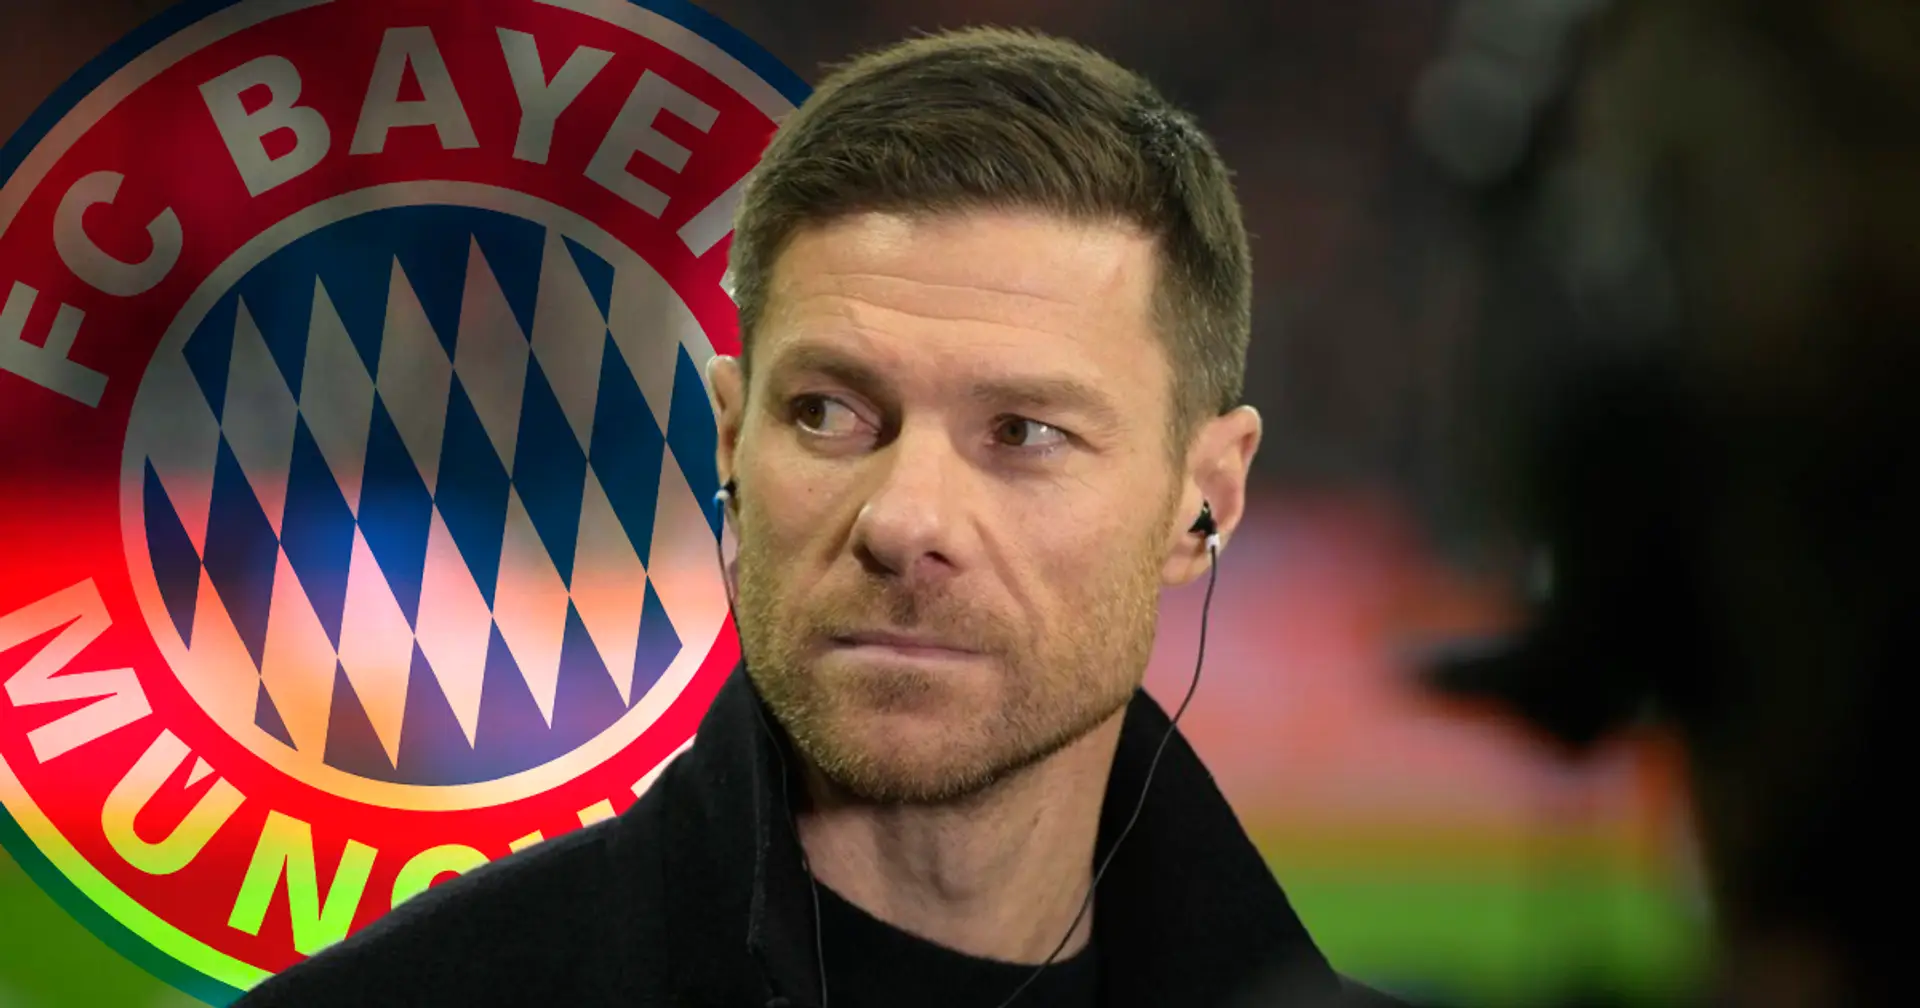 Xabi Alonso ist nicht überzeugt, dass Bayern der richtige Verein für einen jungen Trainer ist - Medien